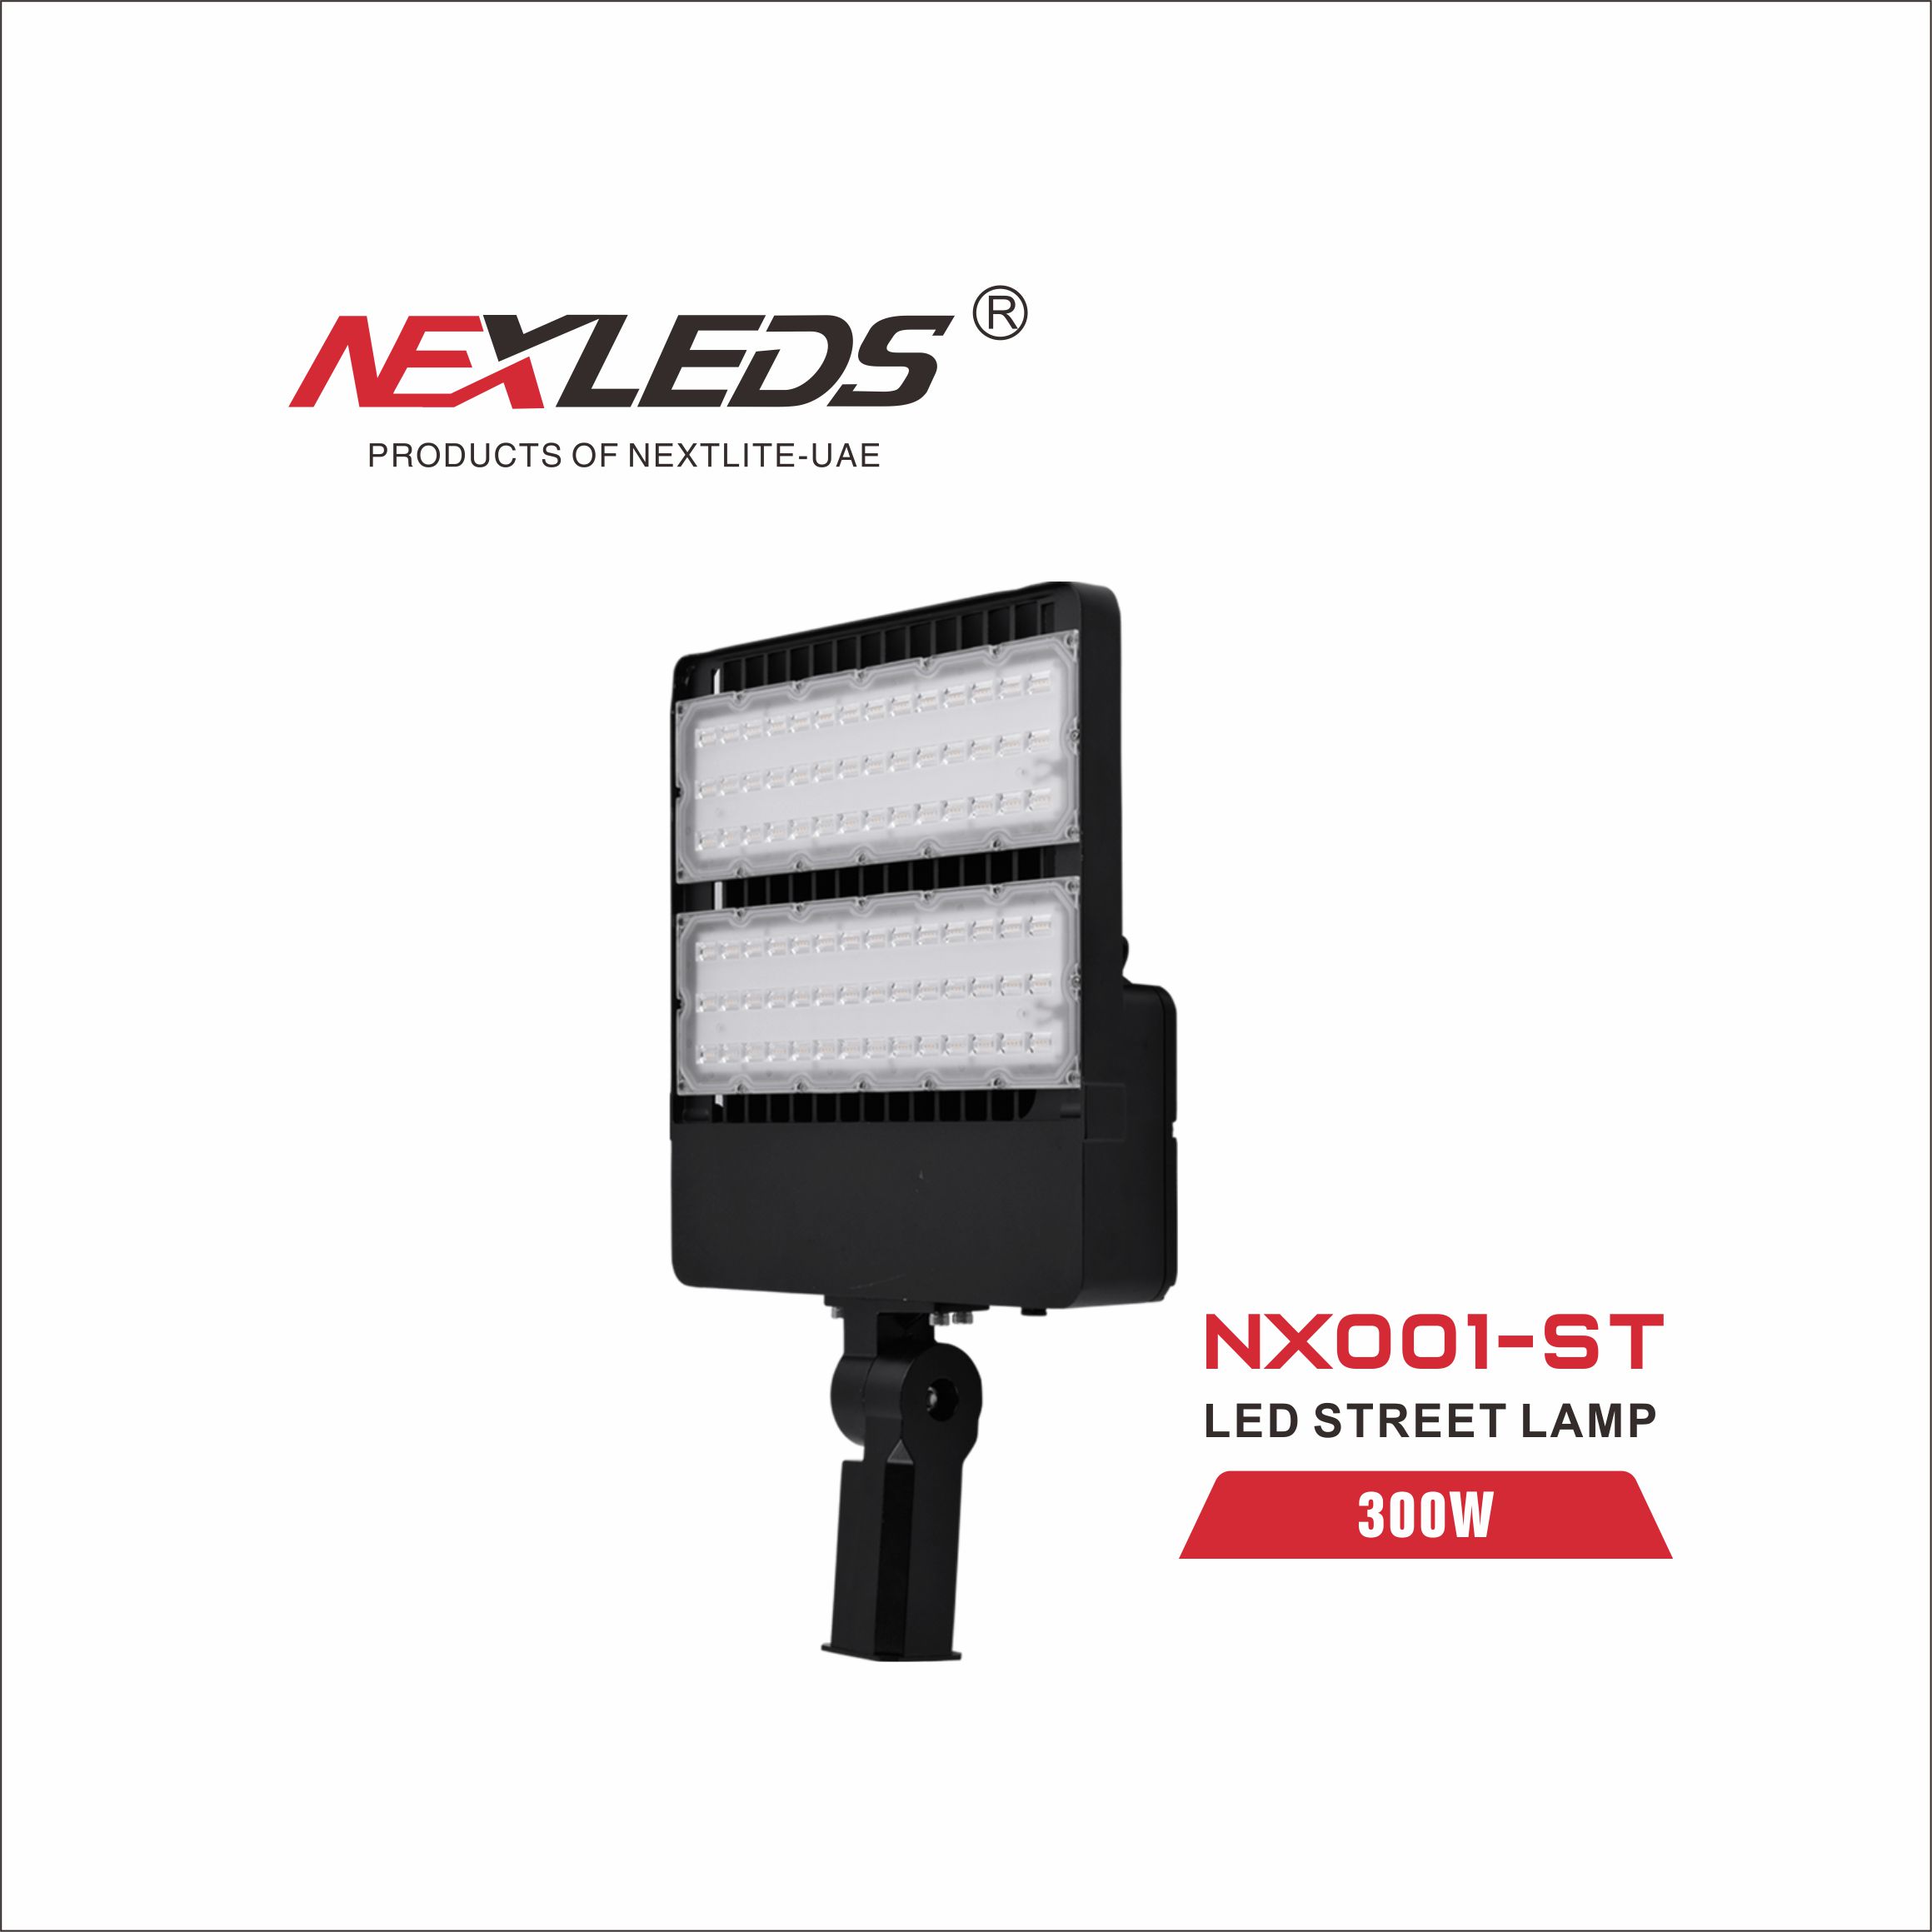 NX001-ST STREET LIGHT/ NX001-FL FLOOD LIGHT